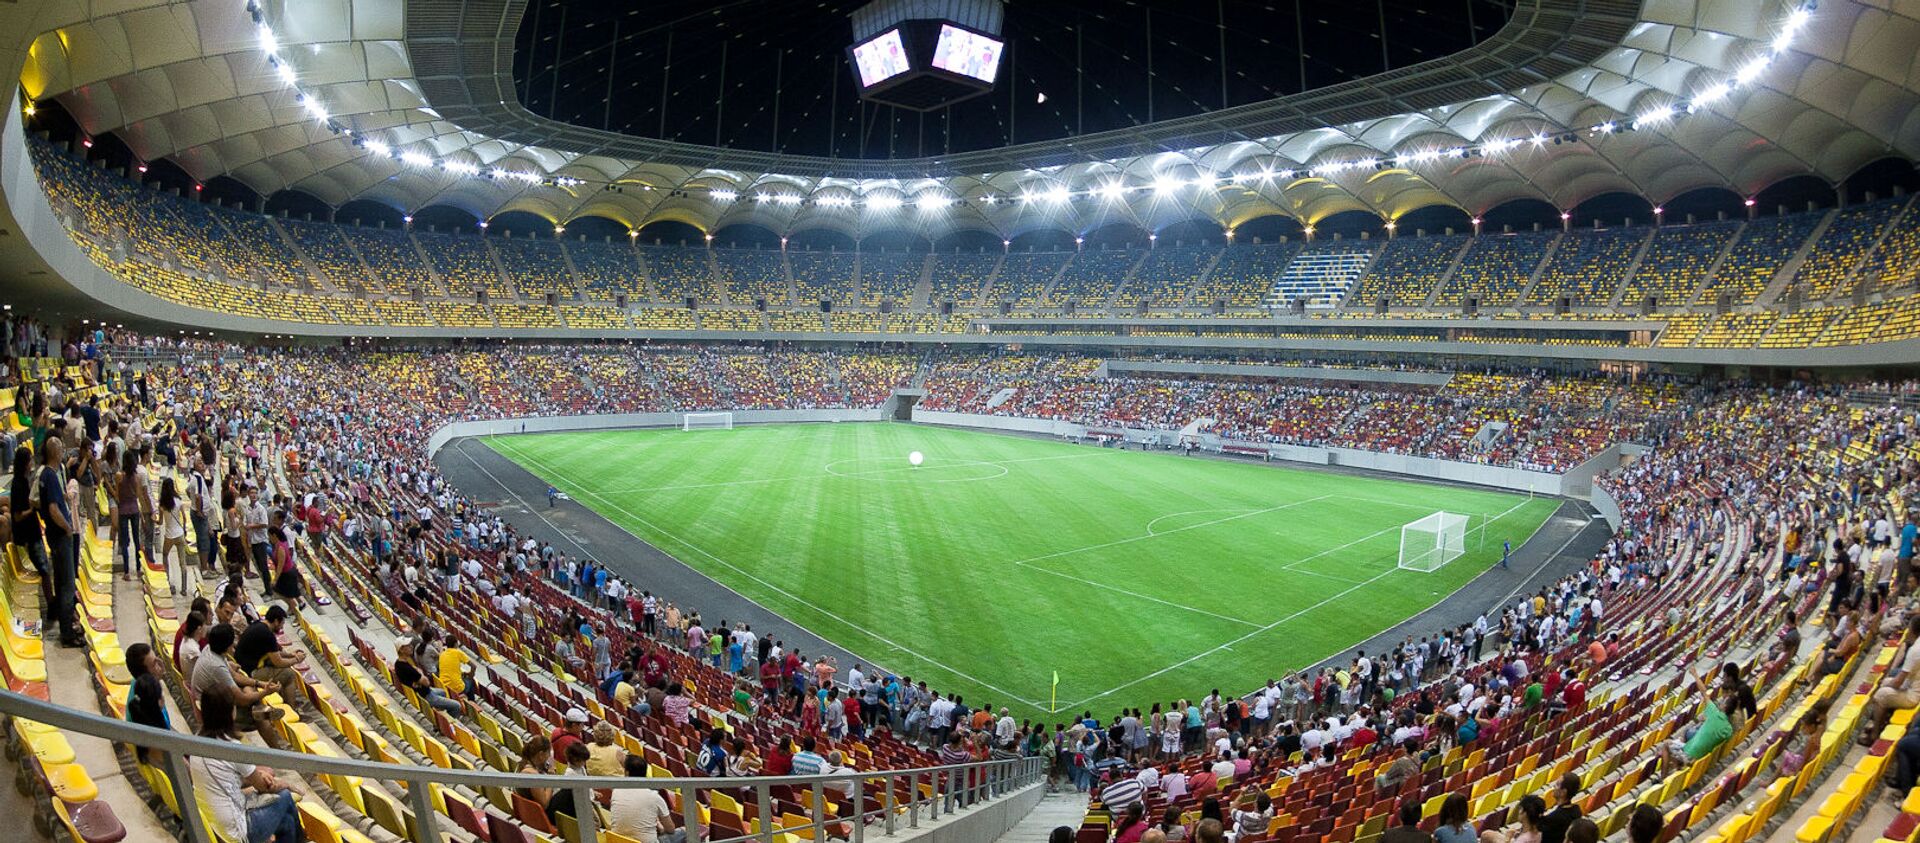 Национальный стадион в Бухаресте, Румыния - Sputnik Абхазия, 1920, 07.06.2021